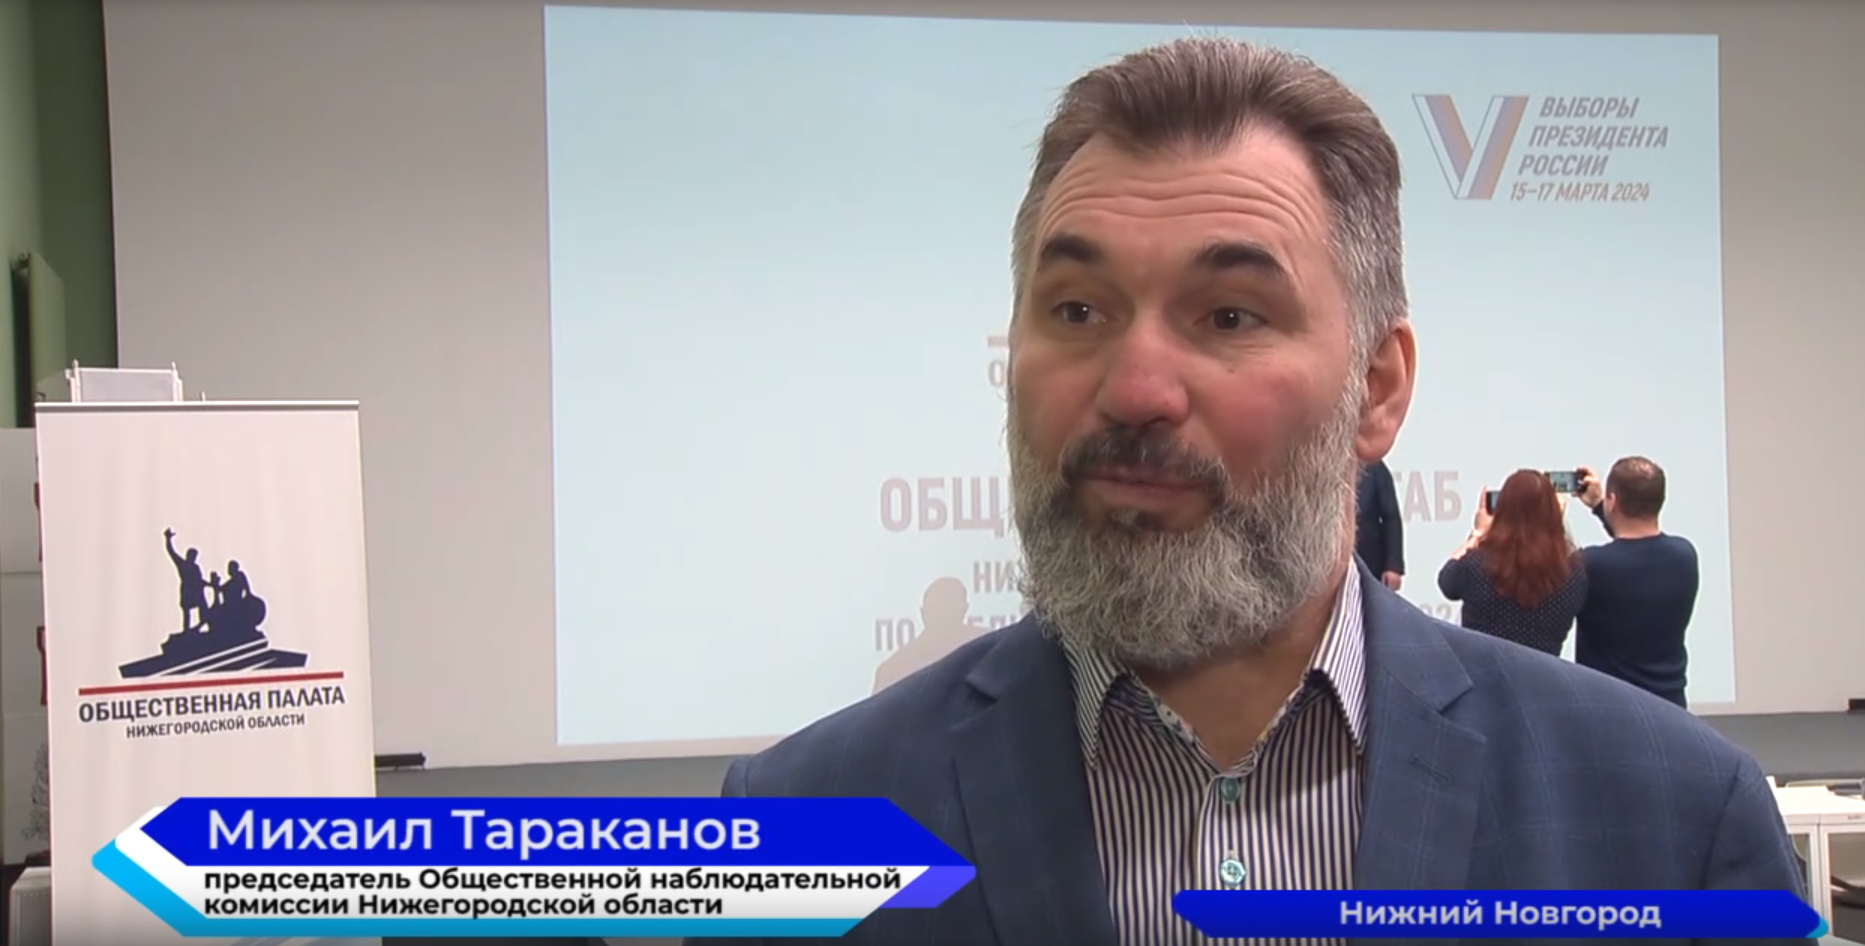 Михаил Тараканов рассказал о том, как проходят выборы Президента Российской Федерации в местах лишения свободы